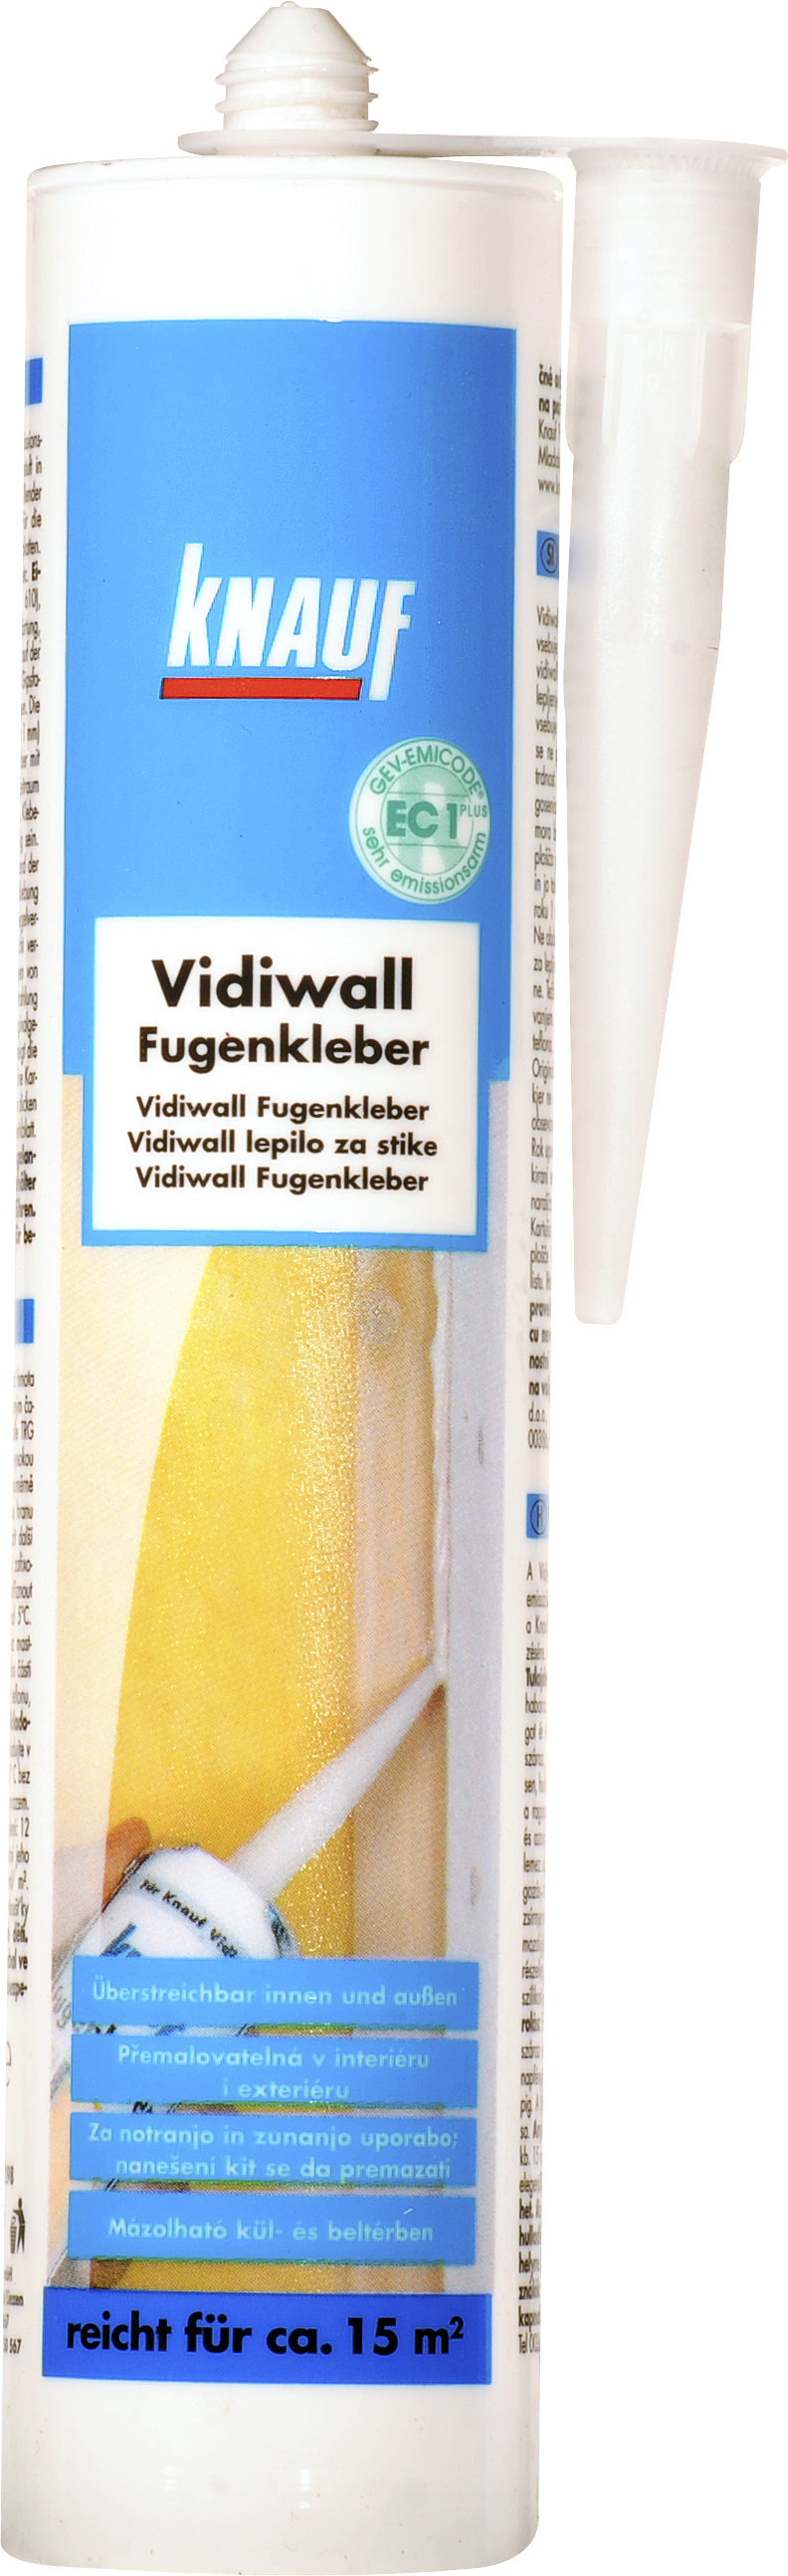 Knauf Vidiwall Fugenkleber